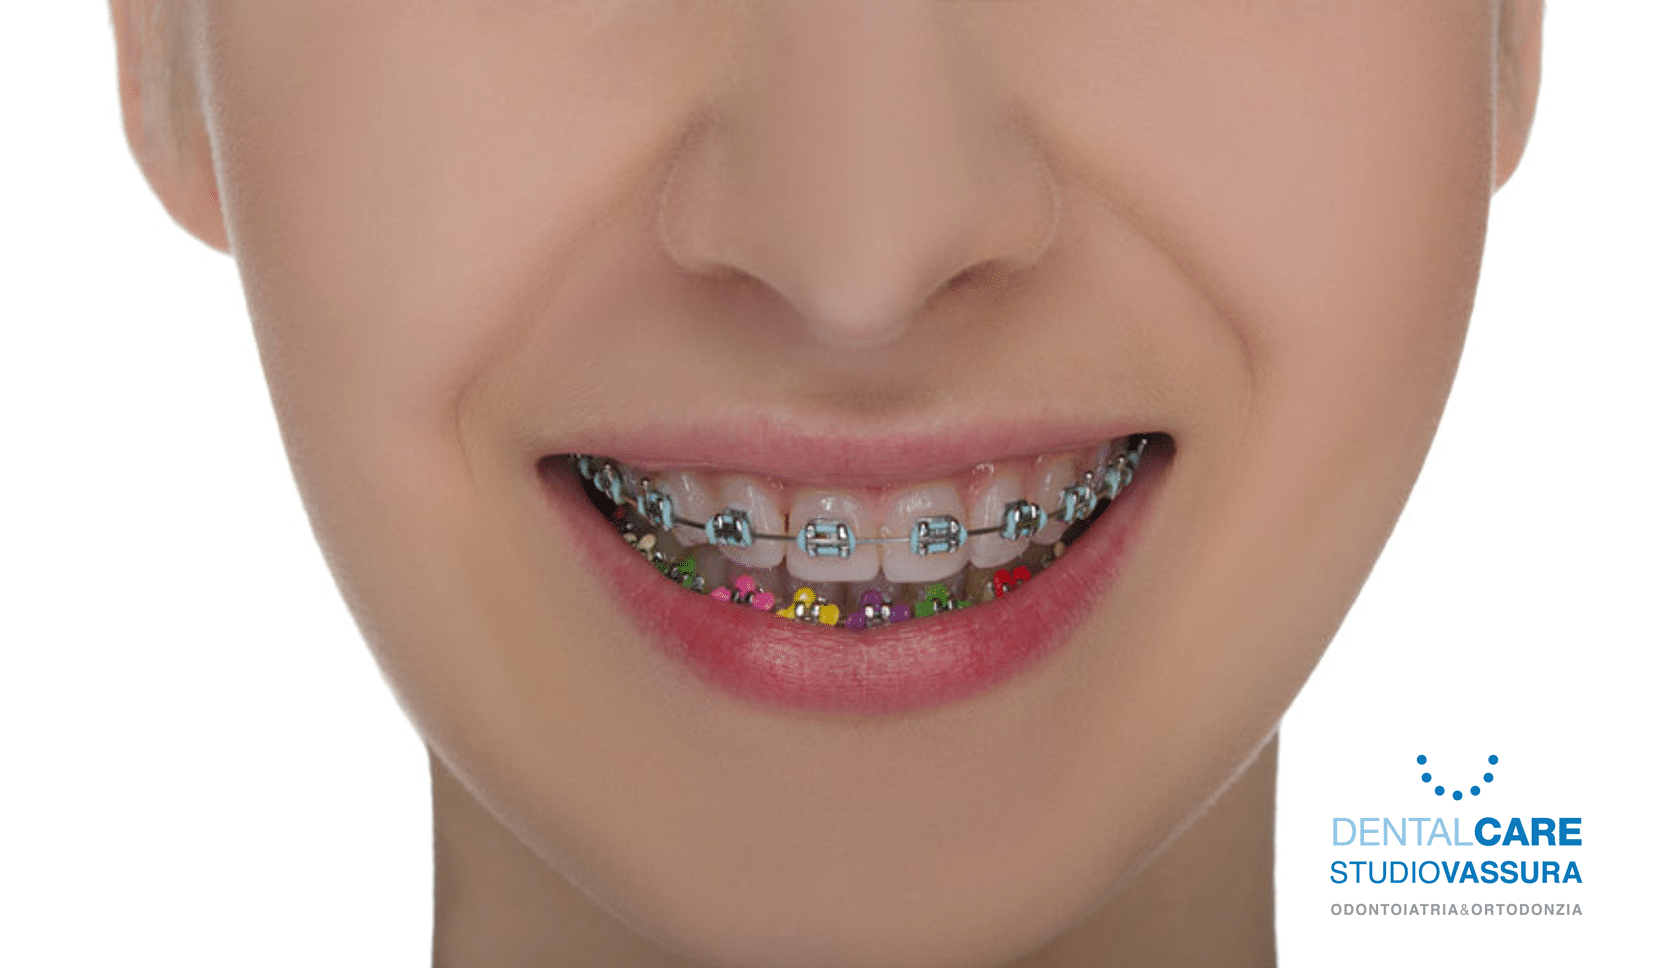 apparecchio ortodontico fisso colorato